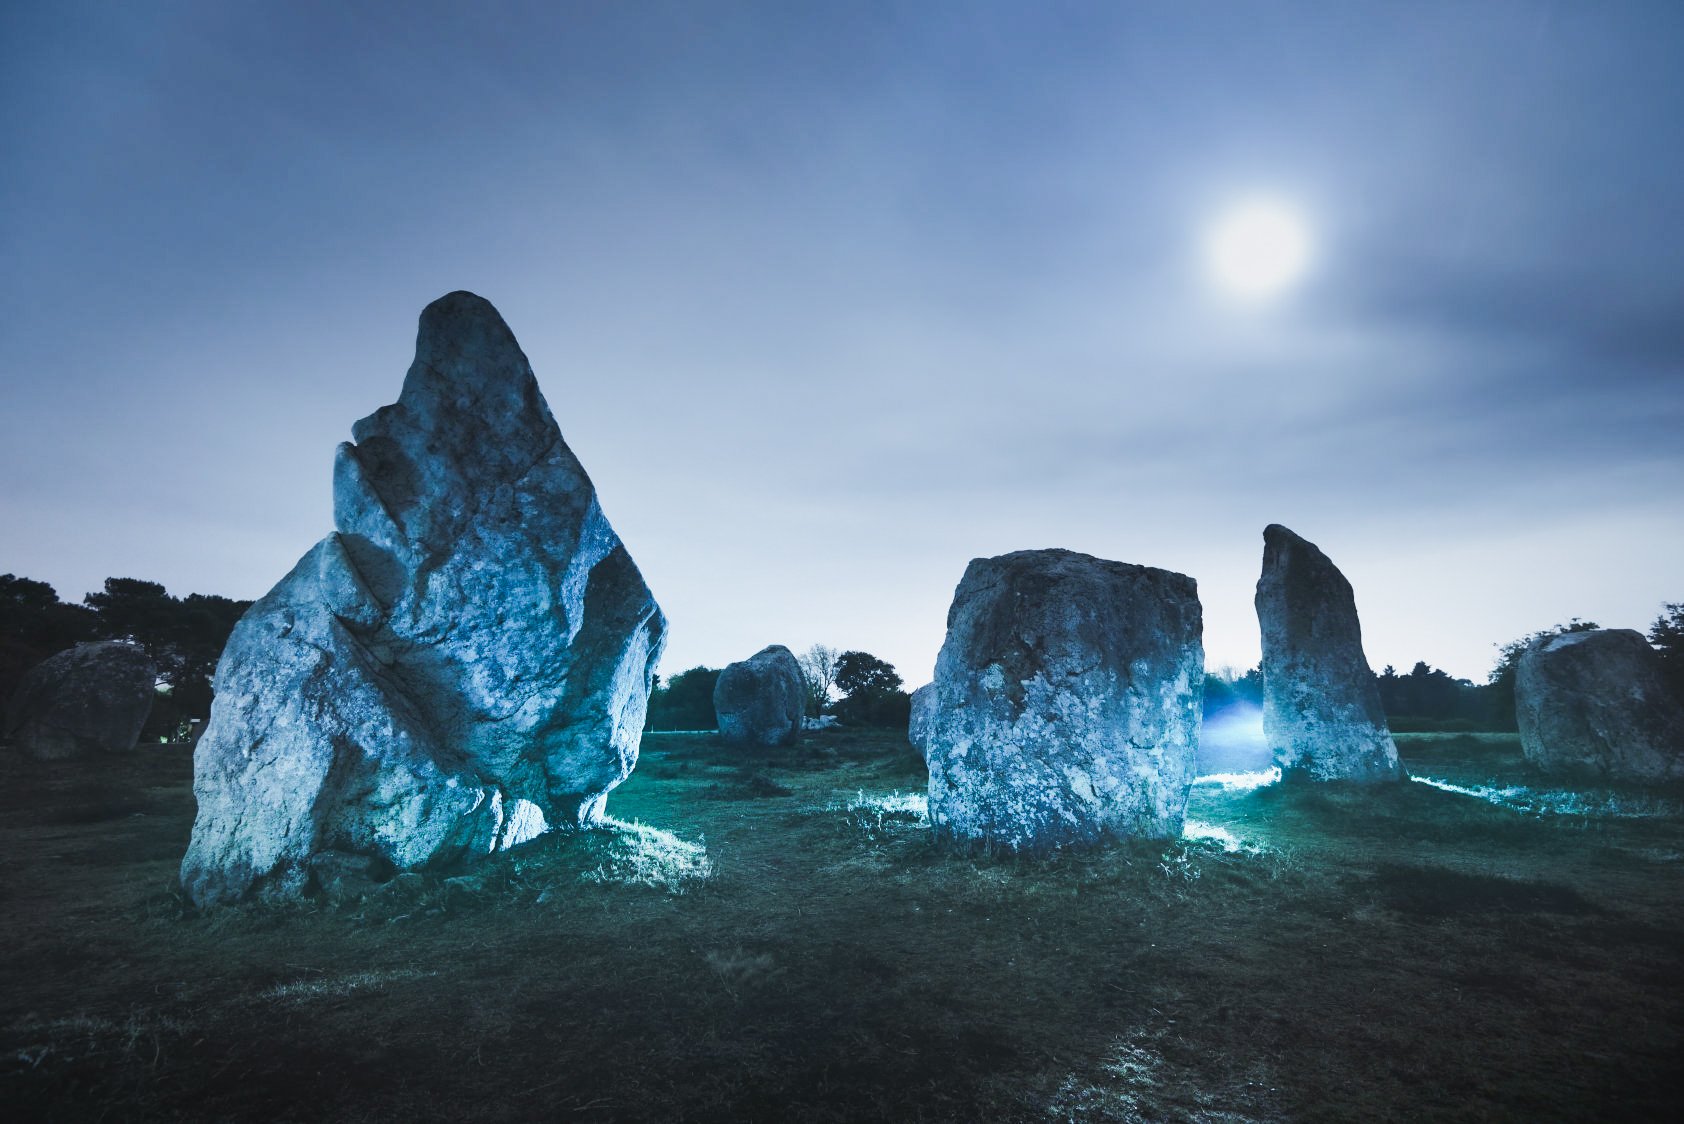 Riesiger megalithischer Komplex aus dem Jahr 5000 v. Chr. in Spanien entdeckt 2